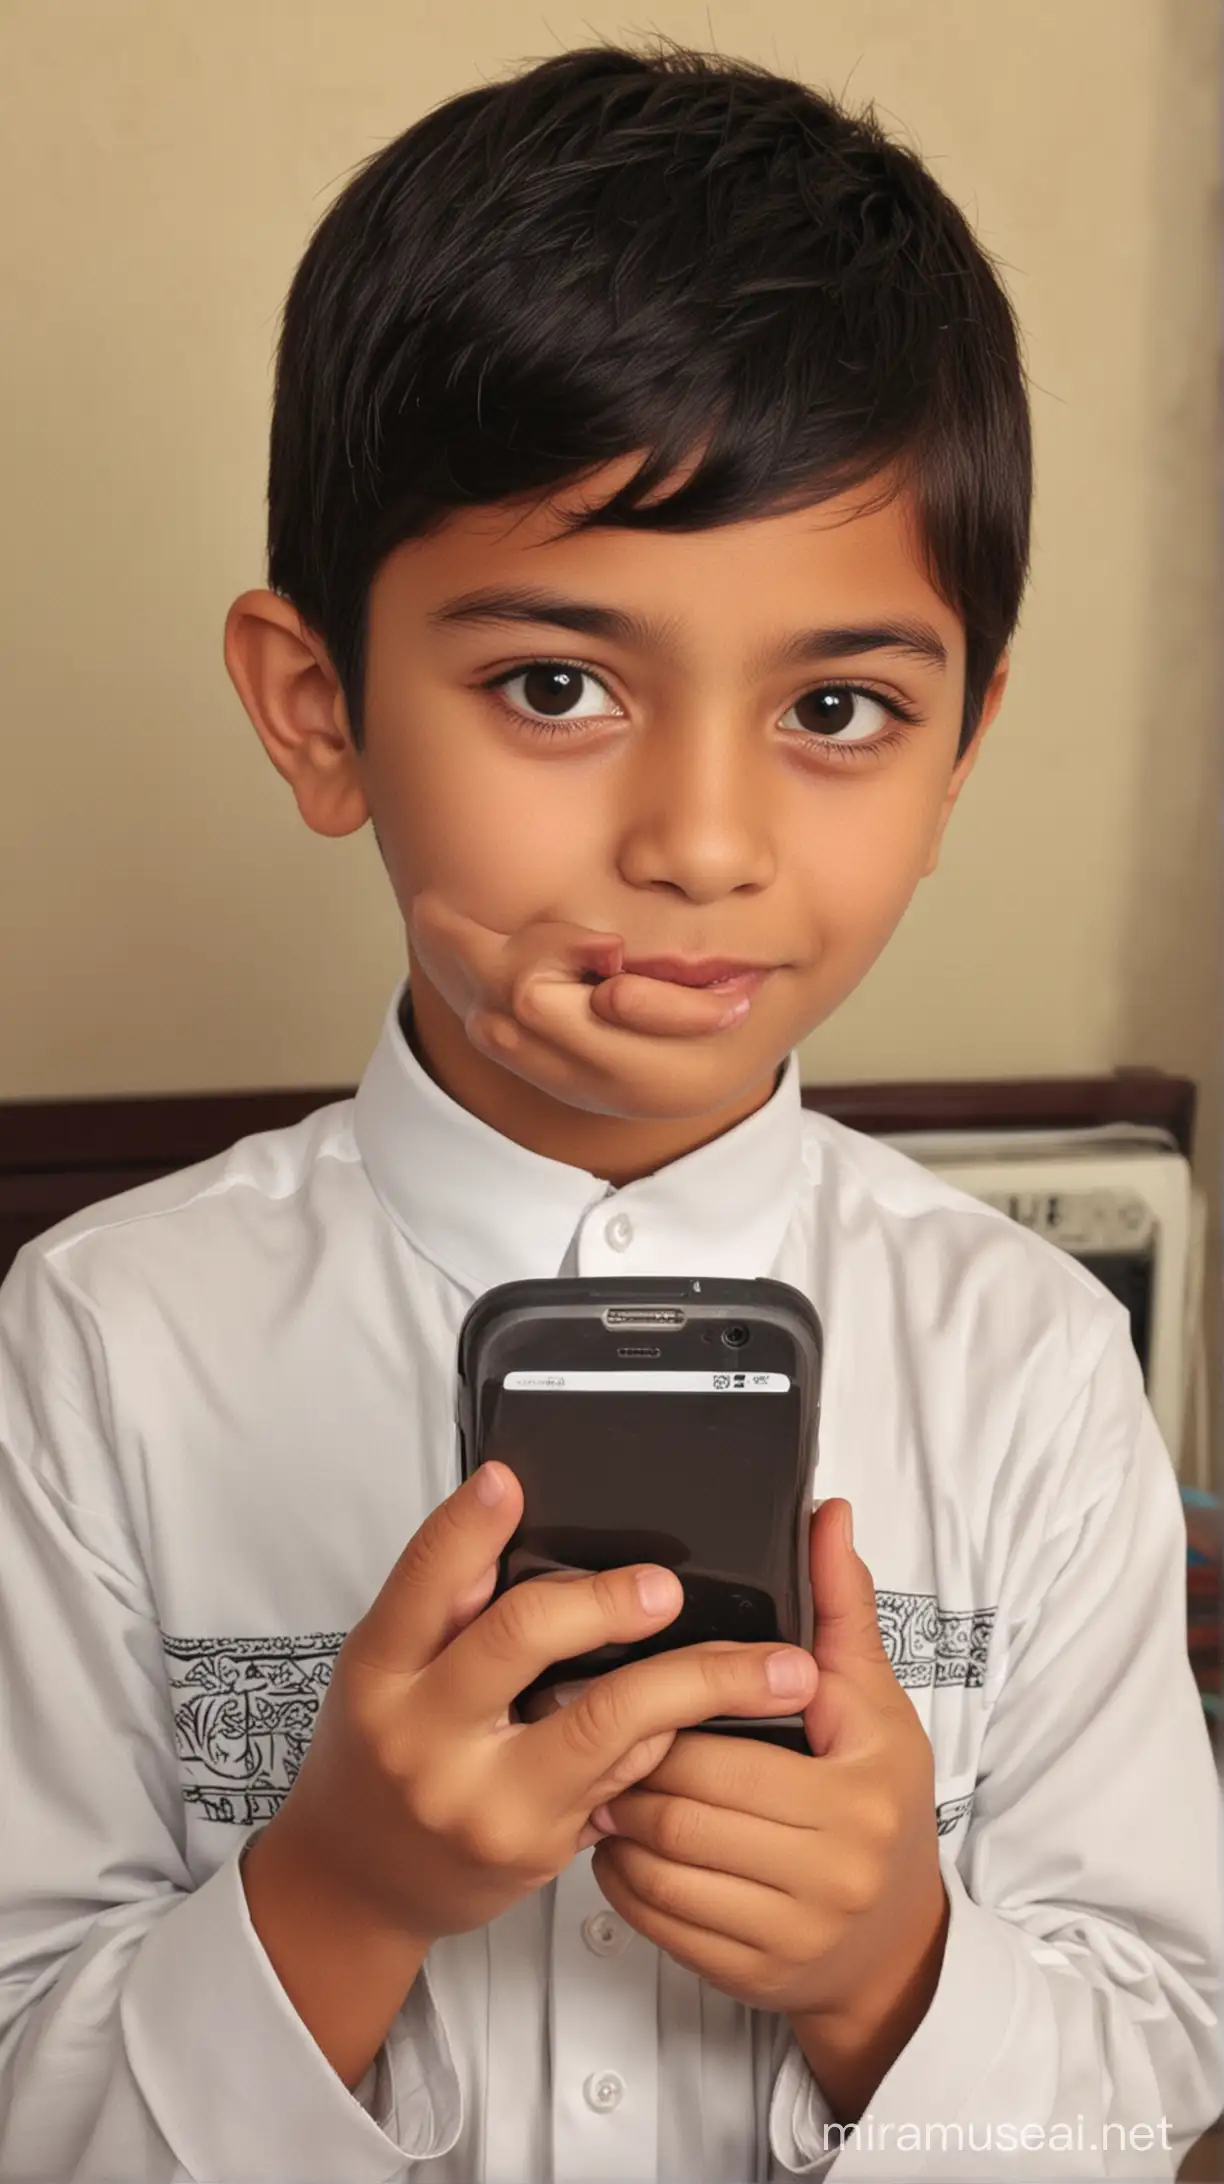 Online Islamic school
"muslim kid boy introducing mobie phone
